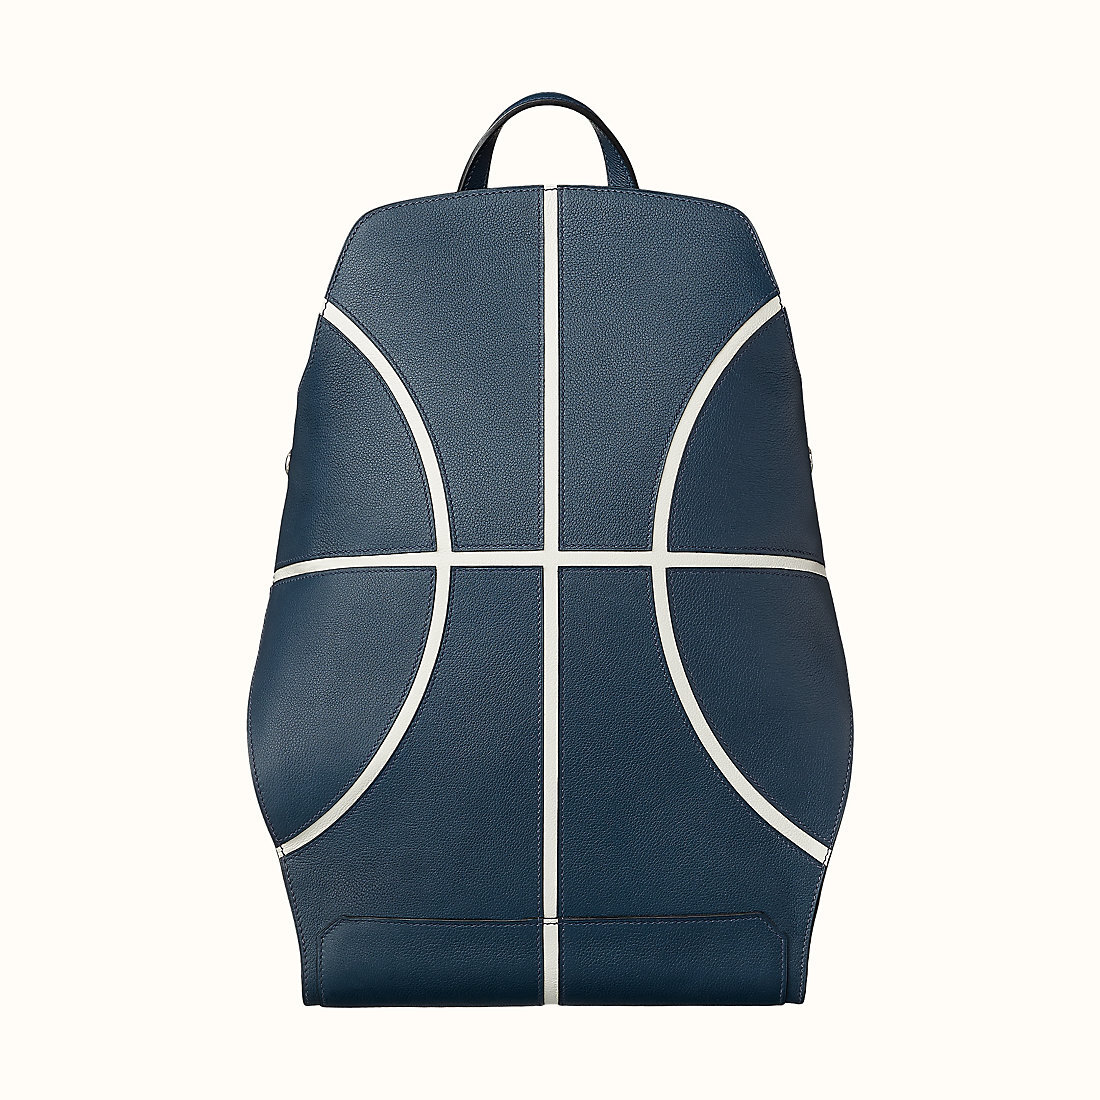 cityback-27-basketball-backpack-collecting-luxury-1.jpg